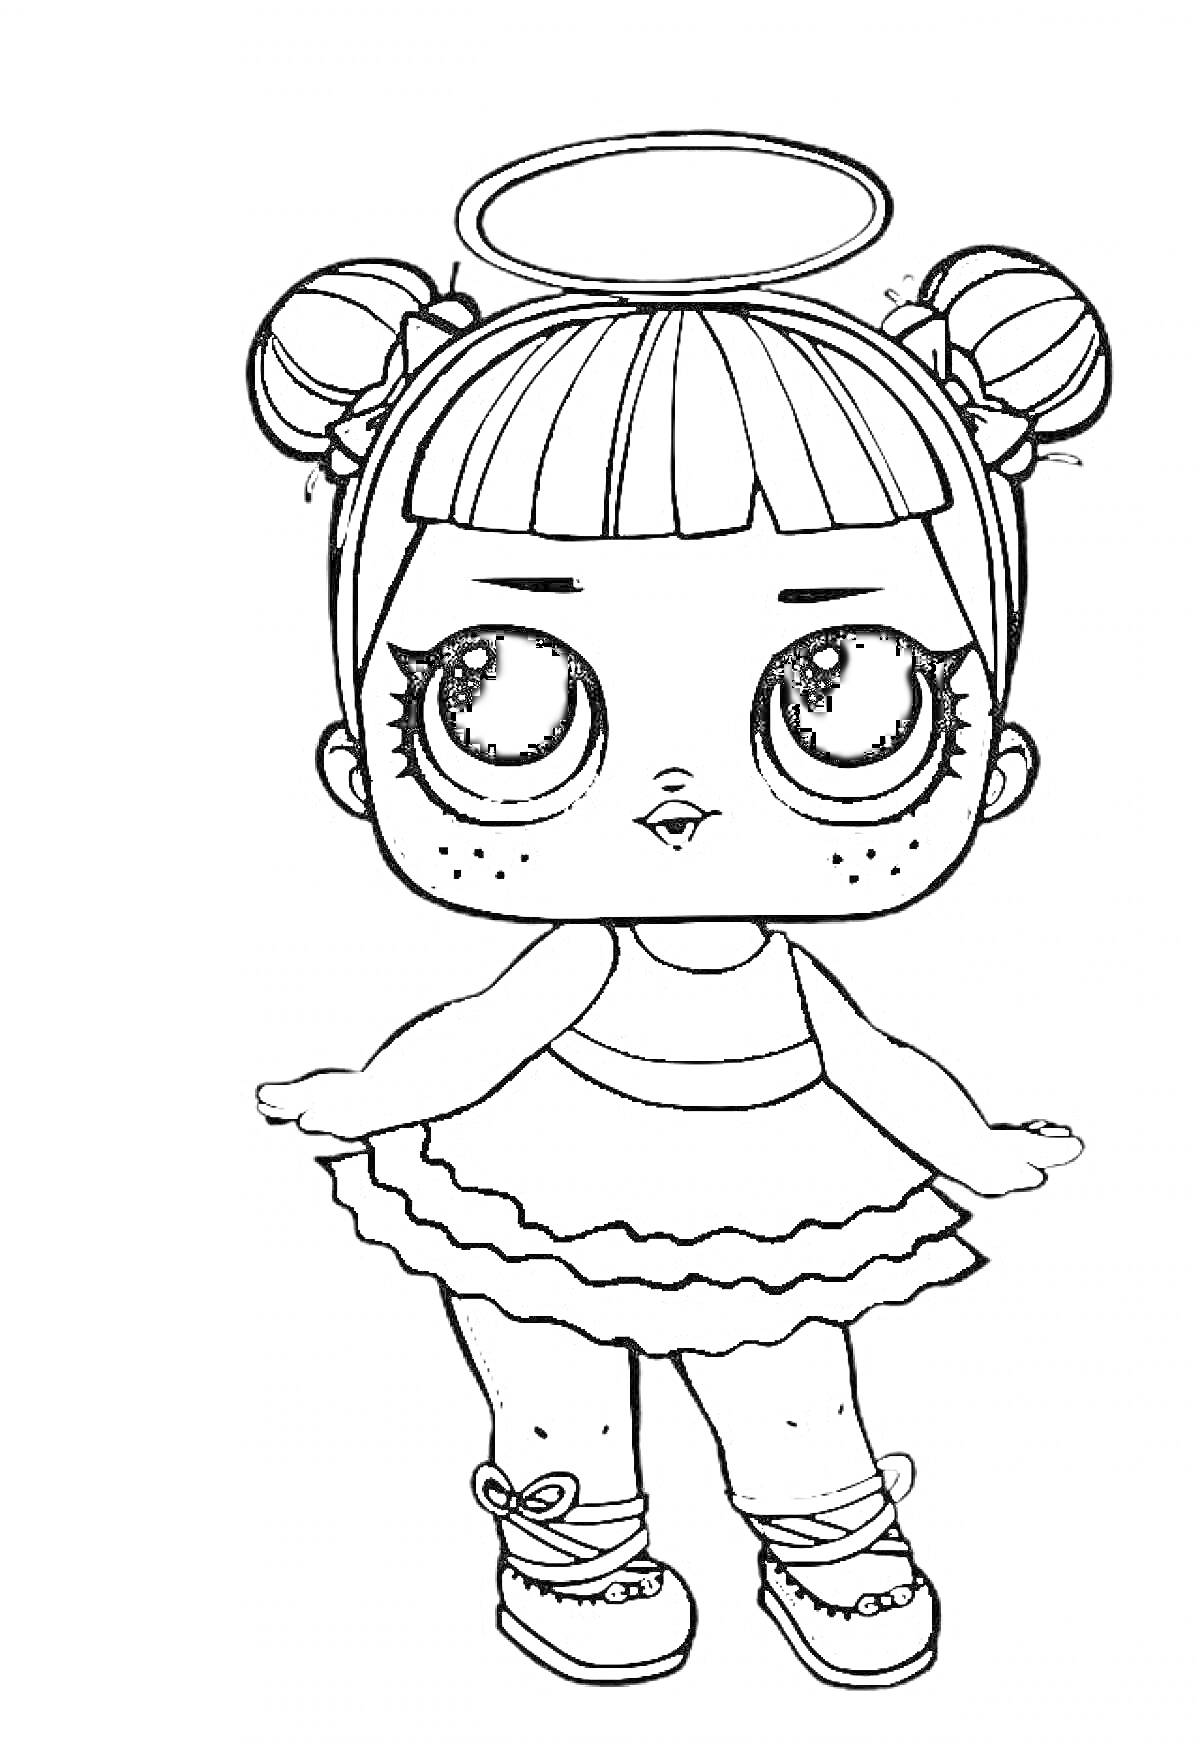 Раскраска Кукла Лол с нимбом, бантиками на волосах, платьем с оборками и туфлями с ленточками